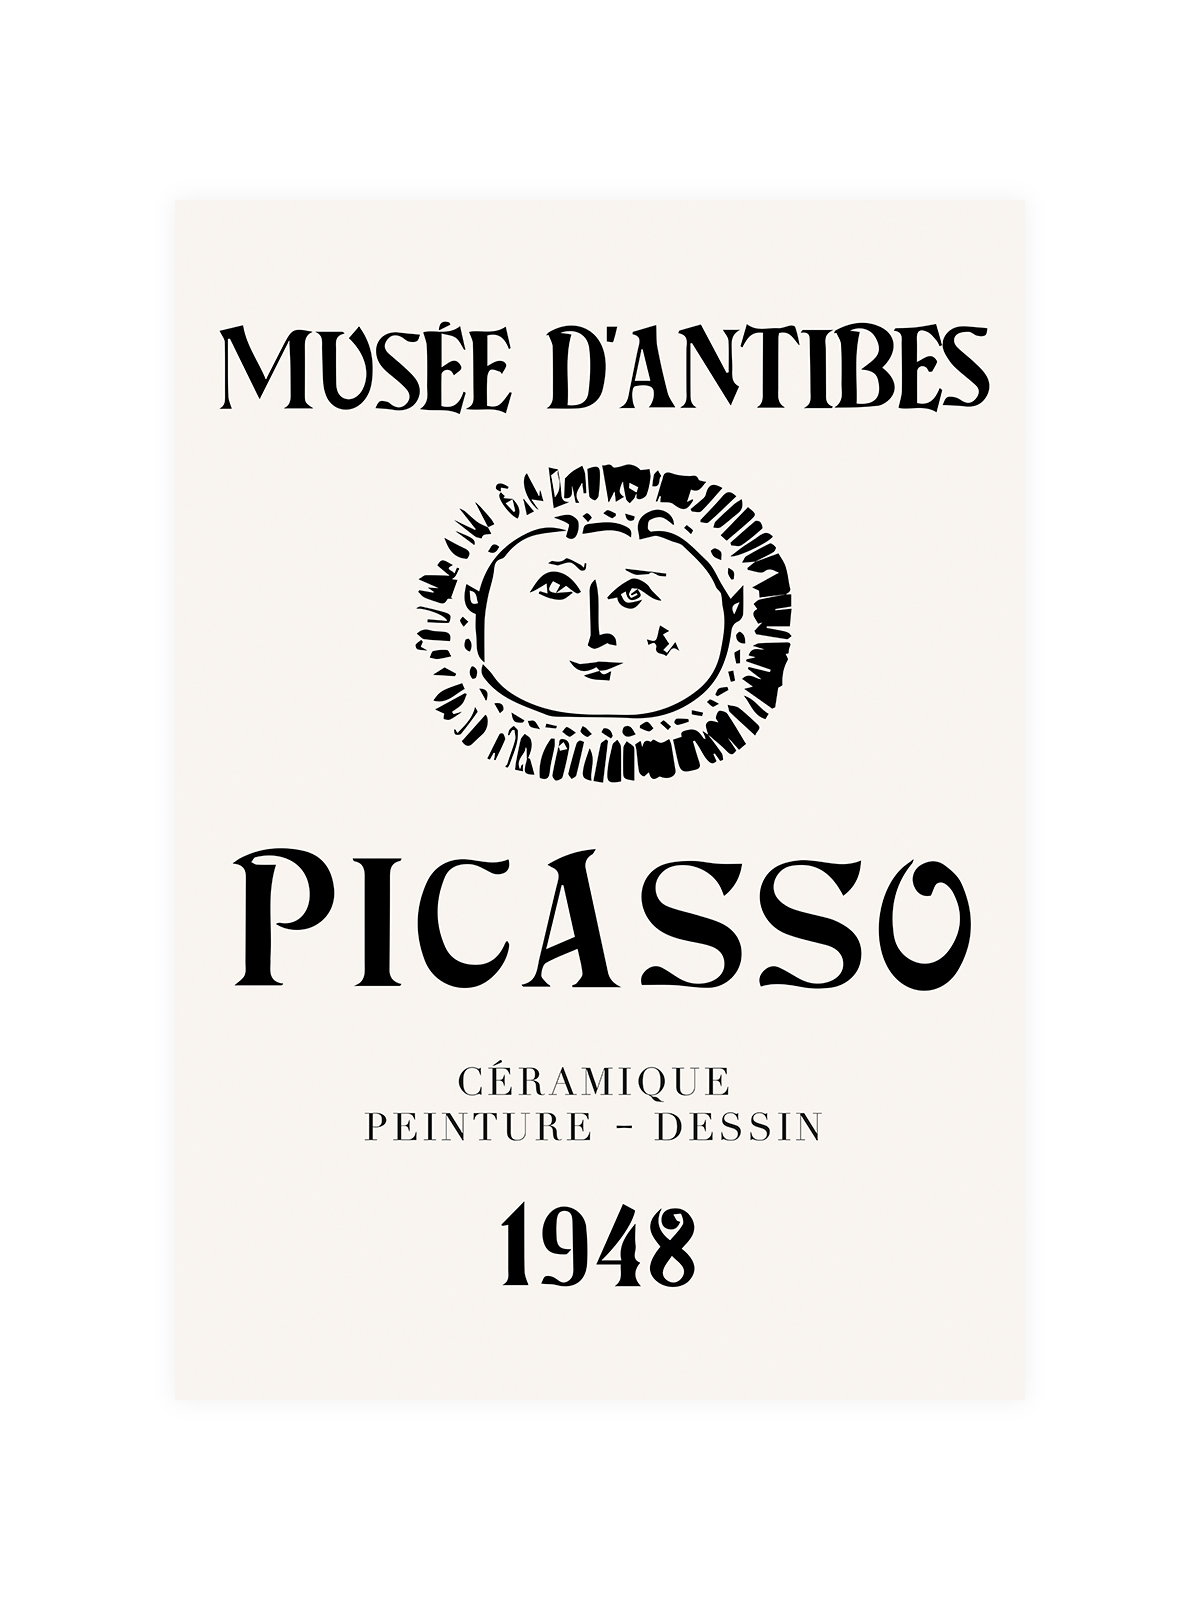 Picasso Ceramique 1948 Poster